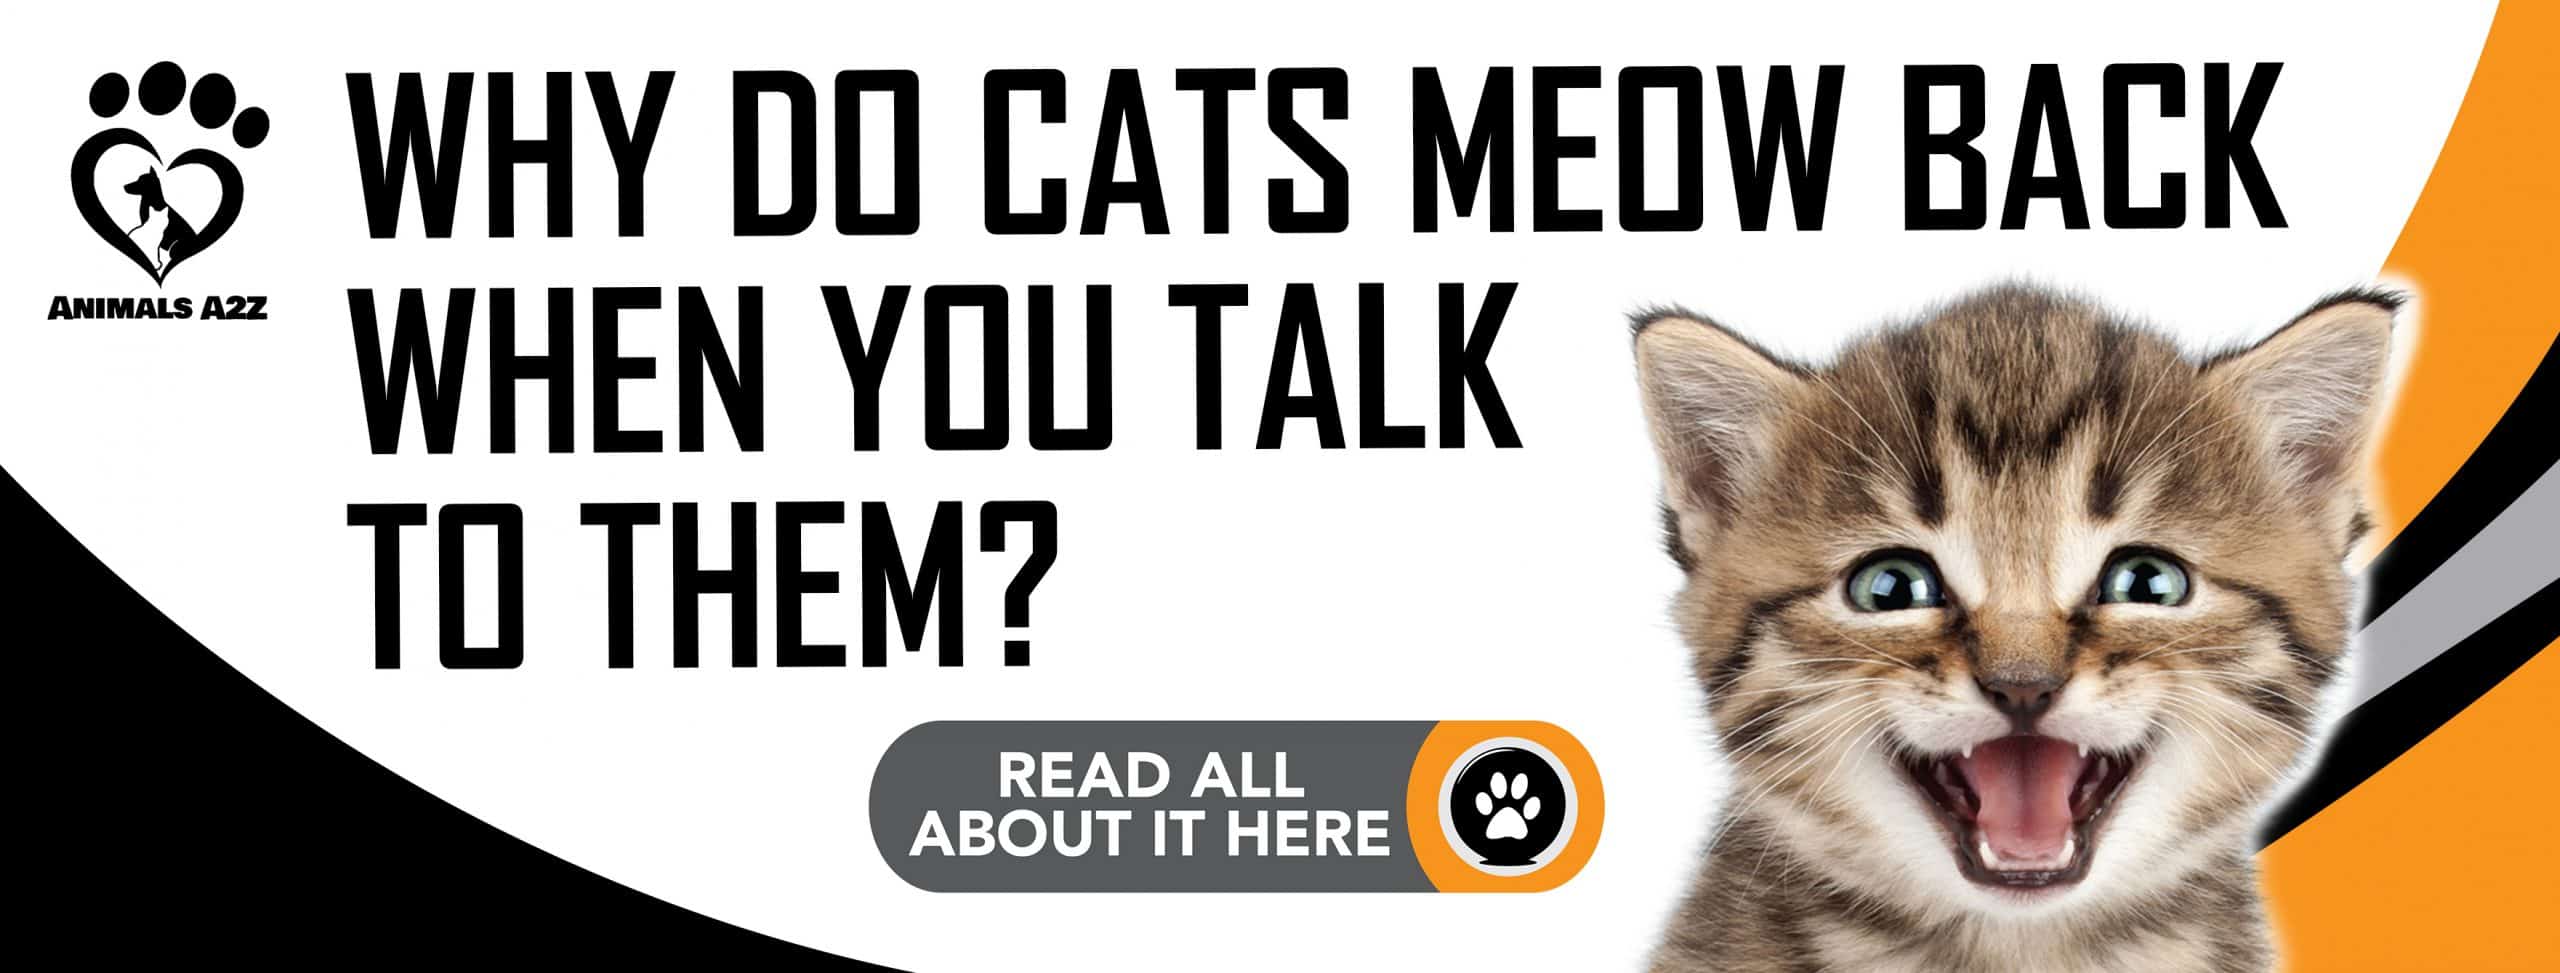 Warum miauen Katzen zurück, wenn man mit ihnen spricht?